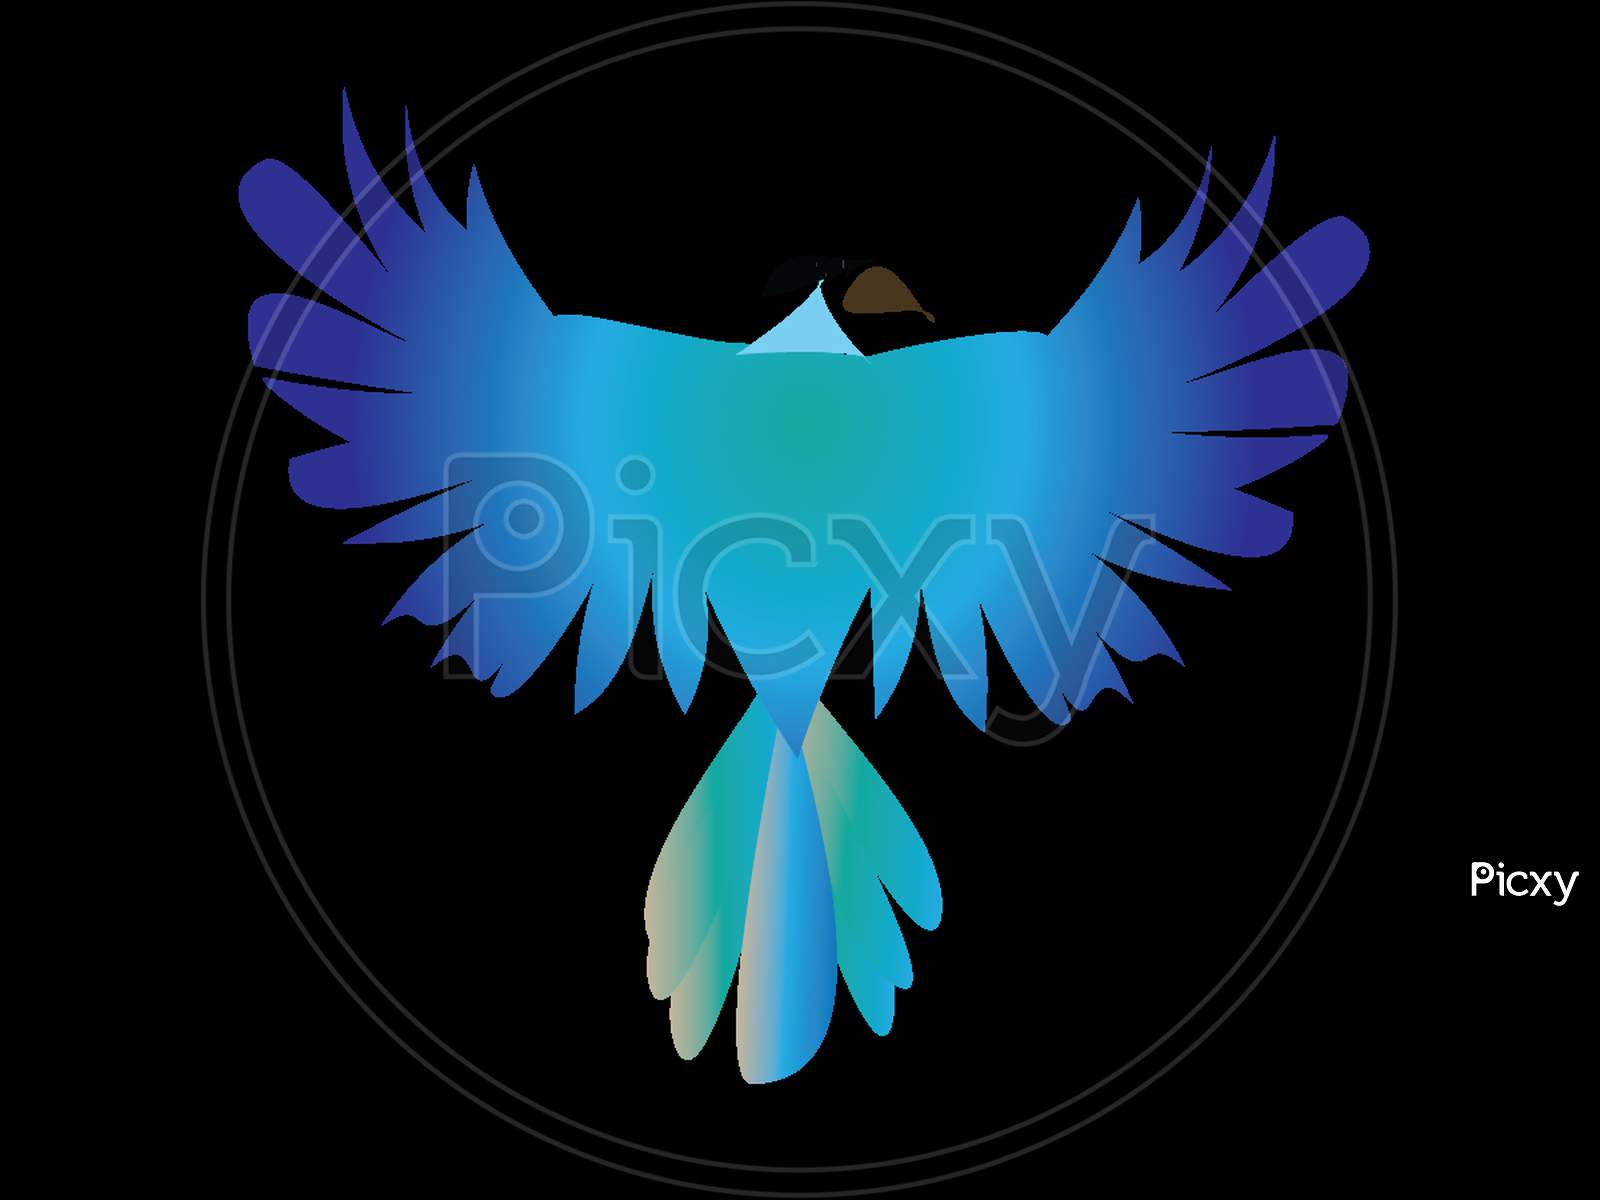 A Bird logo